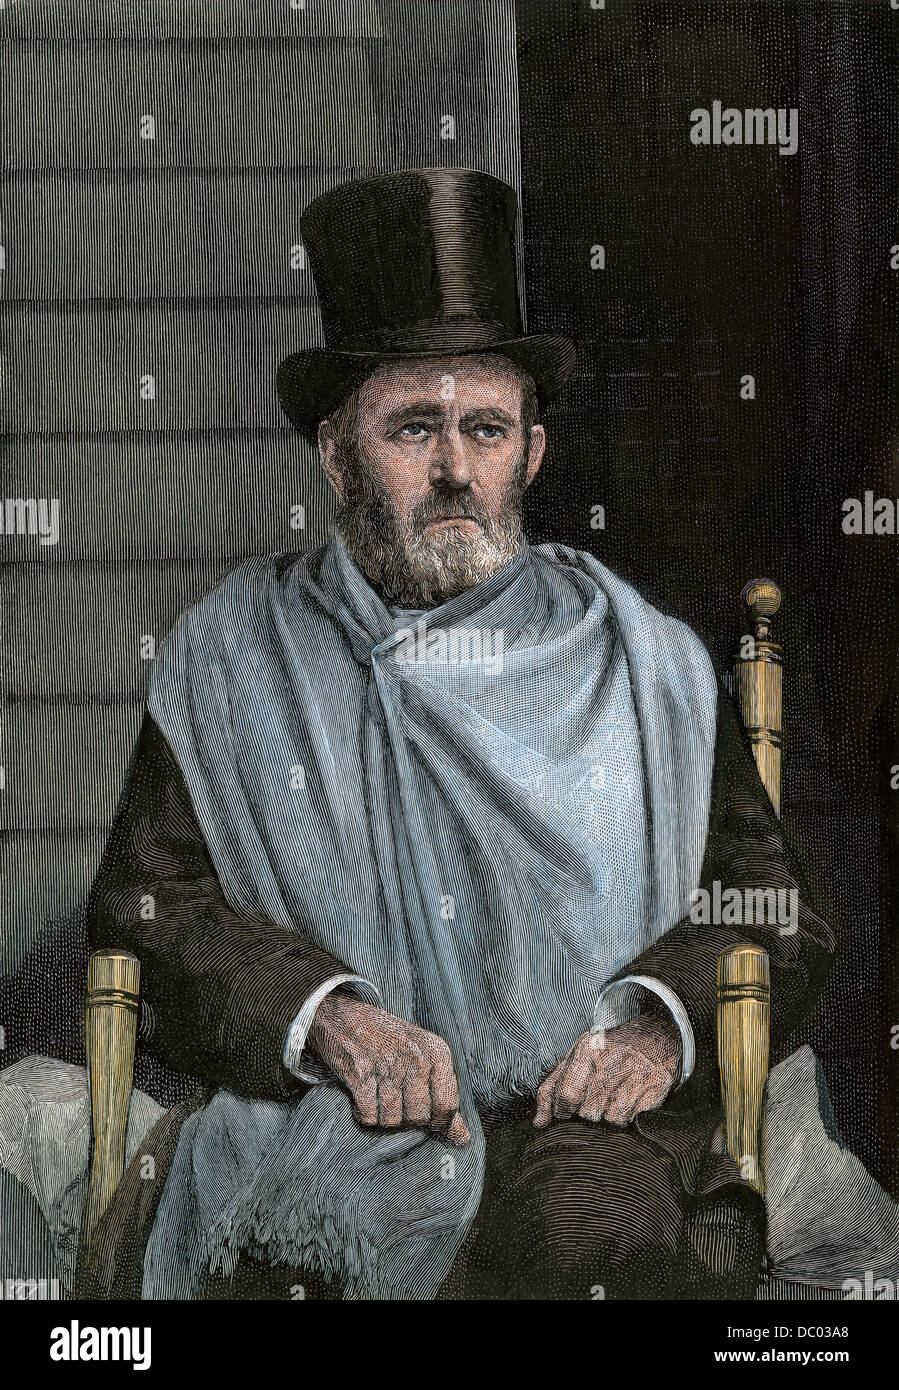 Ulysses S. Grant pendant sa maladie finale au Mt McGregor NY, 1885. À la main, gravure sur bois Banque D'Images